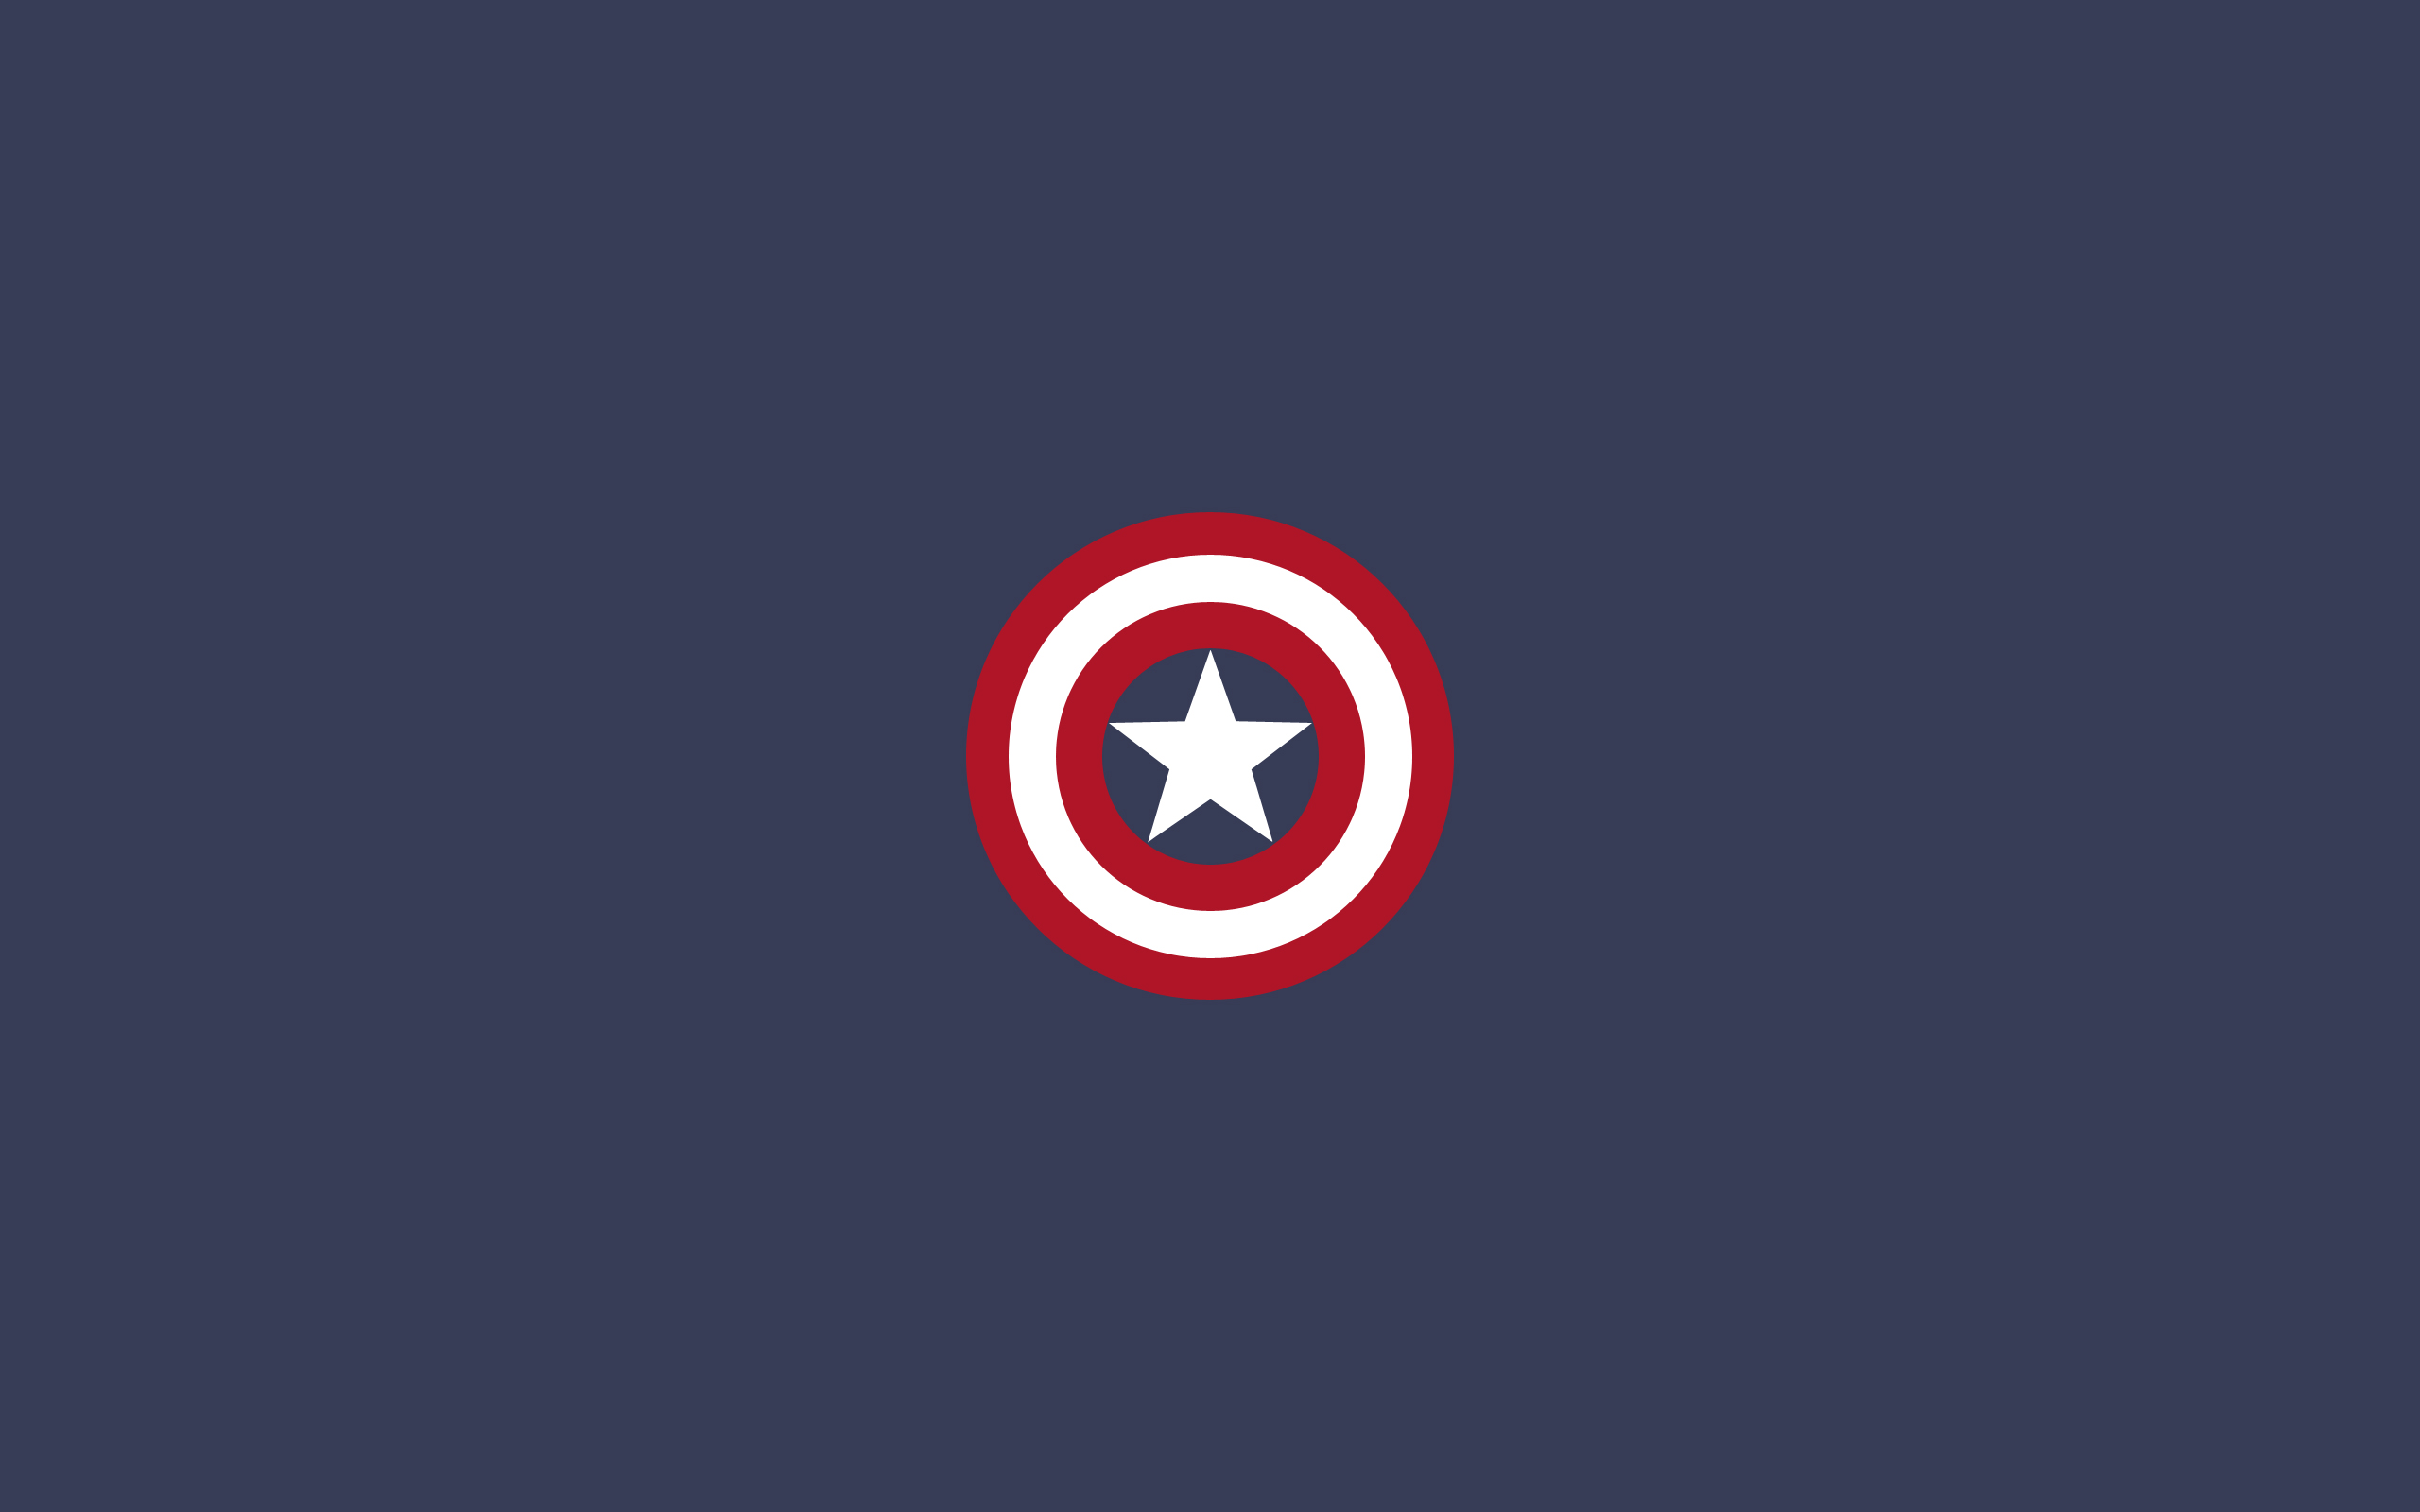 Minimalistic Captain America